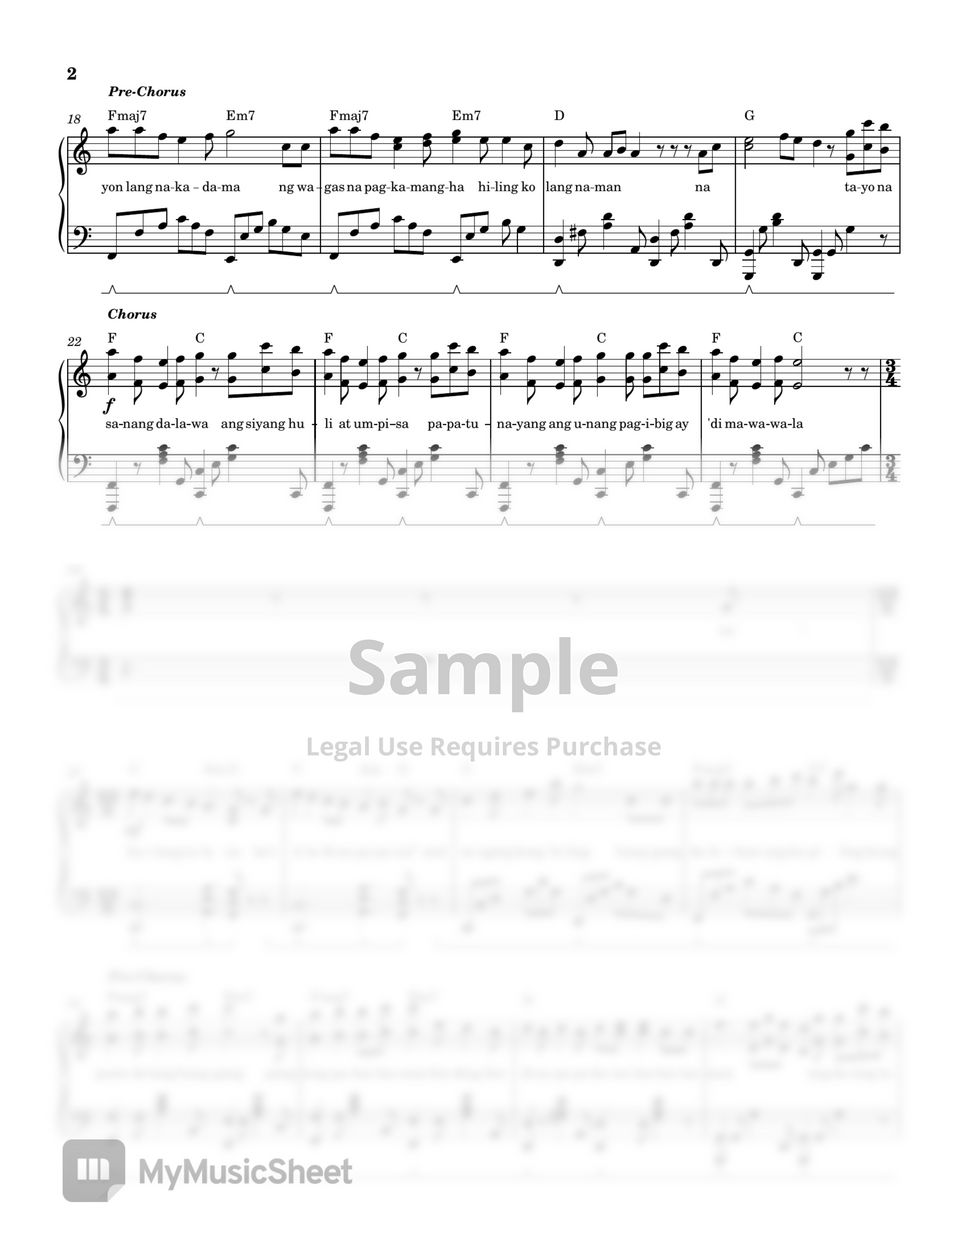 Sugarcane - Leonora (PIANO SHEET) by John Rod Dondoyano